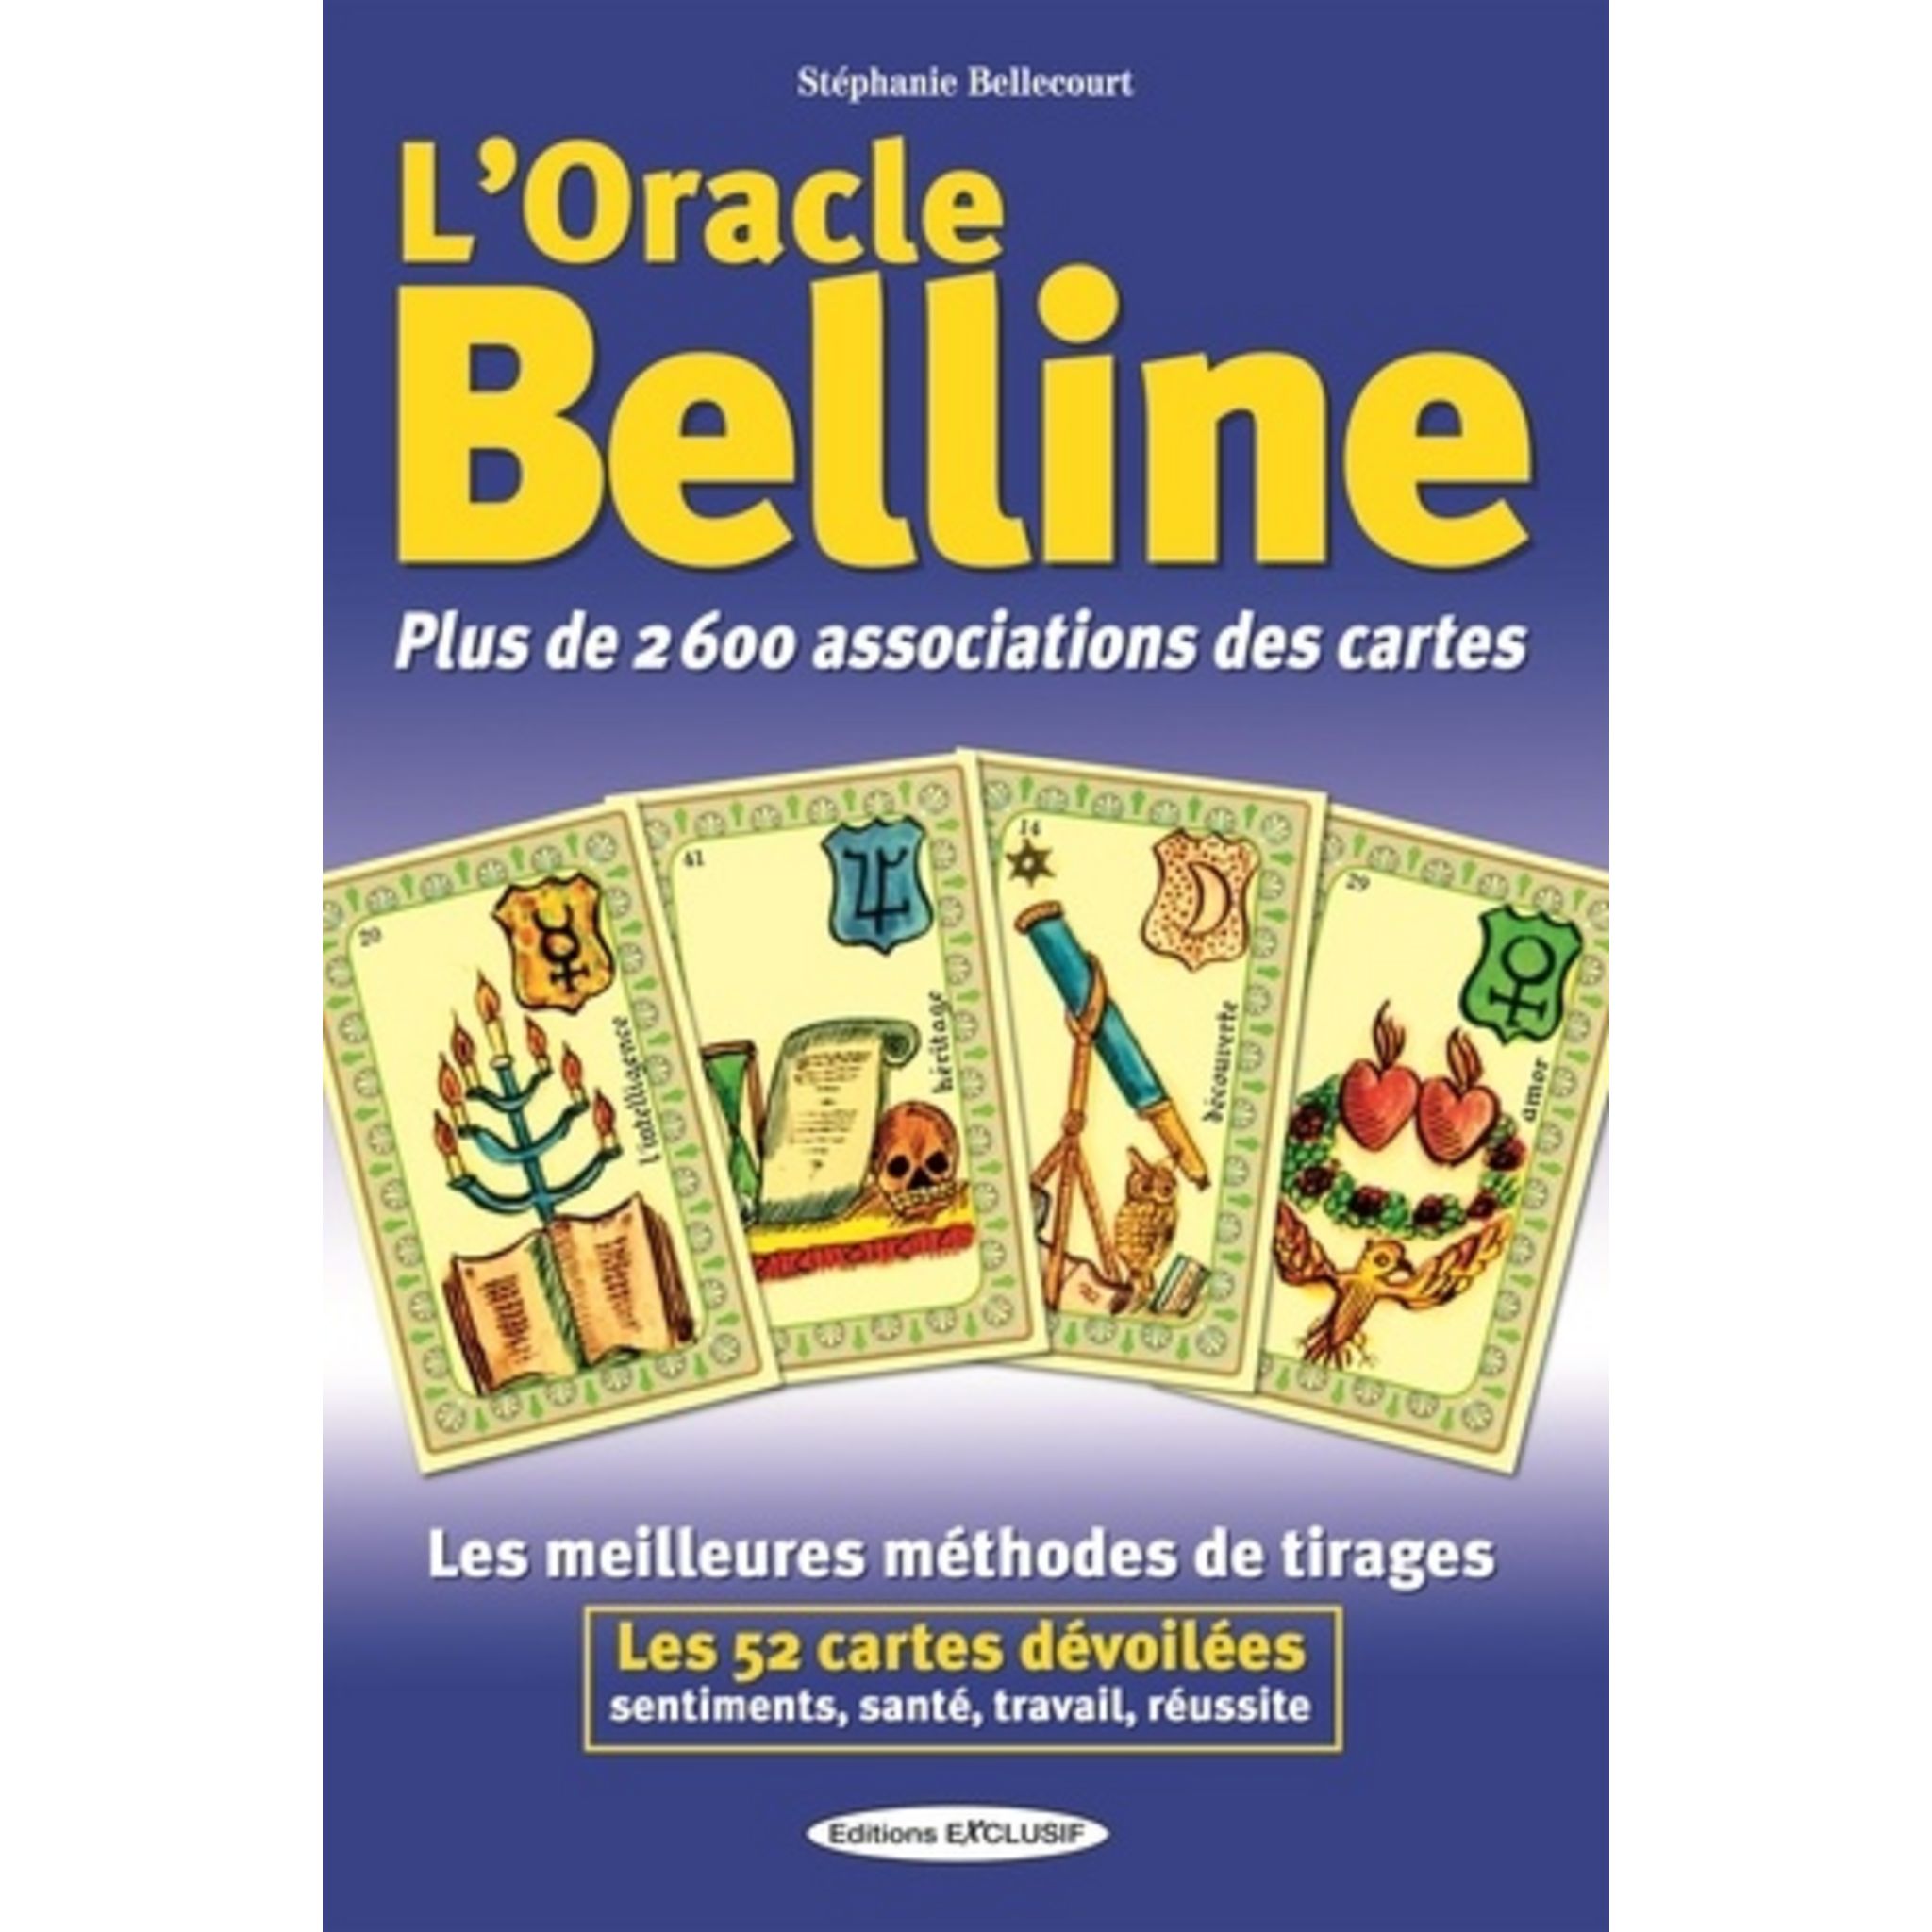 L'ORACLE BELLINE. PLUS DE 2600 ASSOCIATIONS DES CARTES, Bellecourt Stéphanie